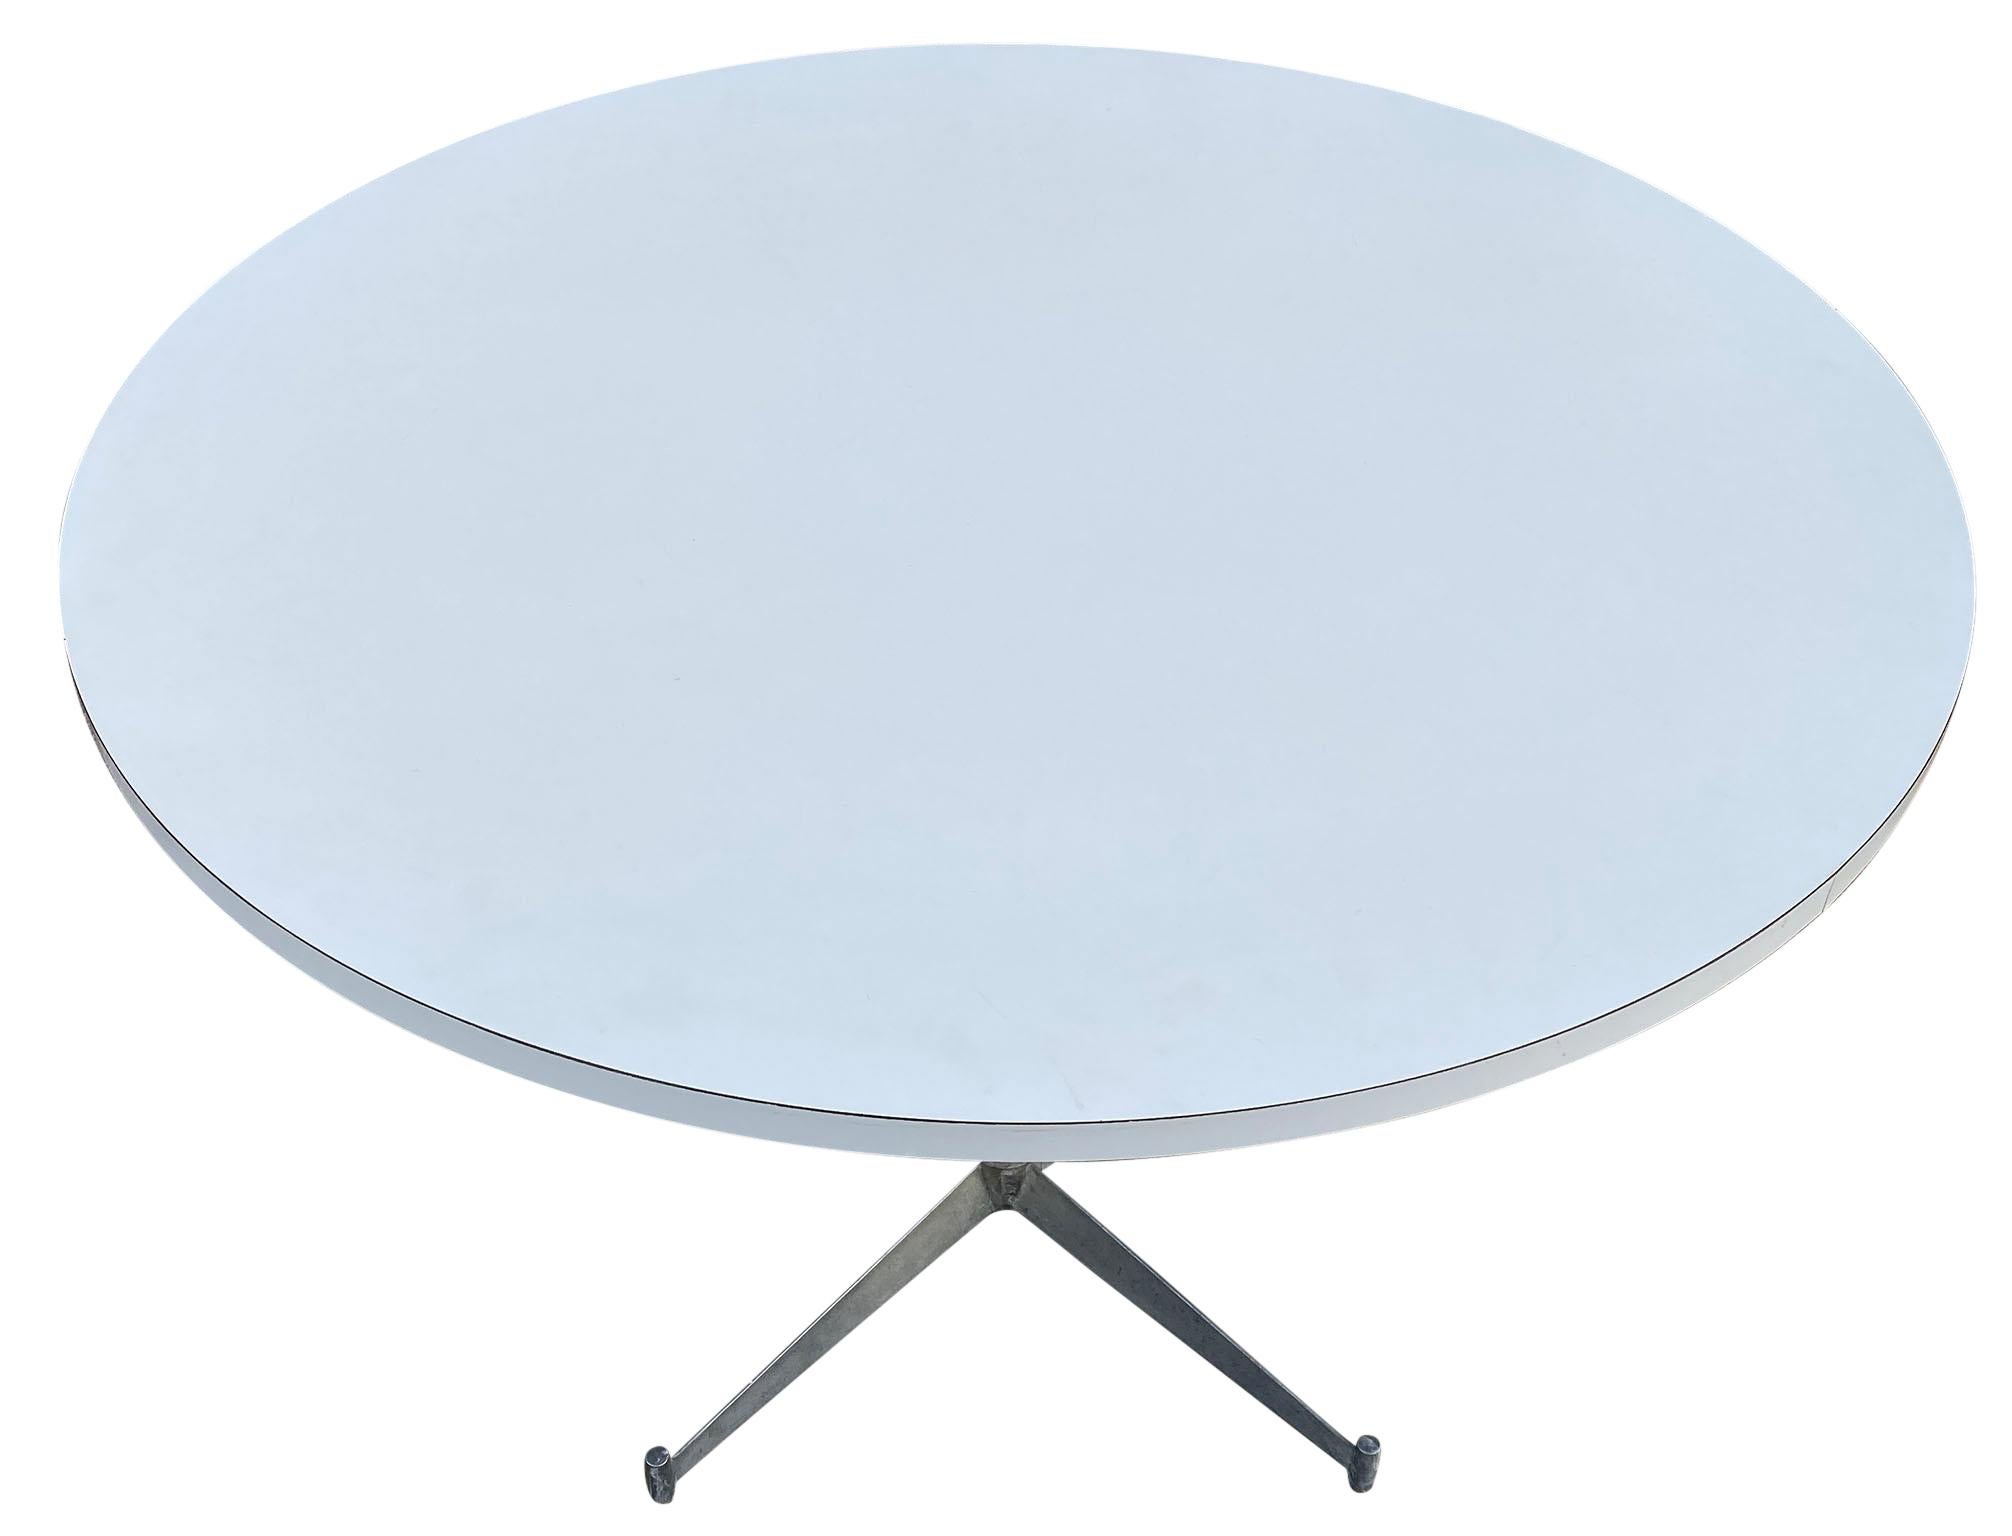 Ein runder, weißer Laminat-Esstisch aus der Mitte des Jahrhunderts mit Aluminiumfuß, entworfen von Paul McCobb. Der Tisch ist in hervorragendem Originalzustand. Großartiges Design, seltener Tisch.

Maße: 42